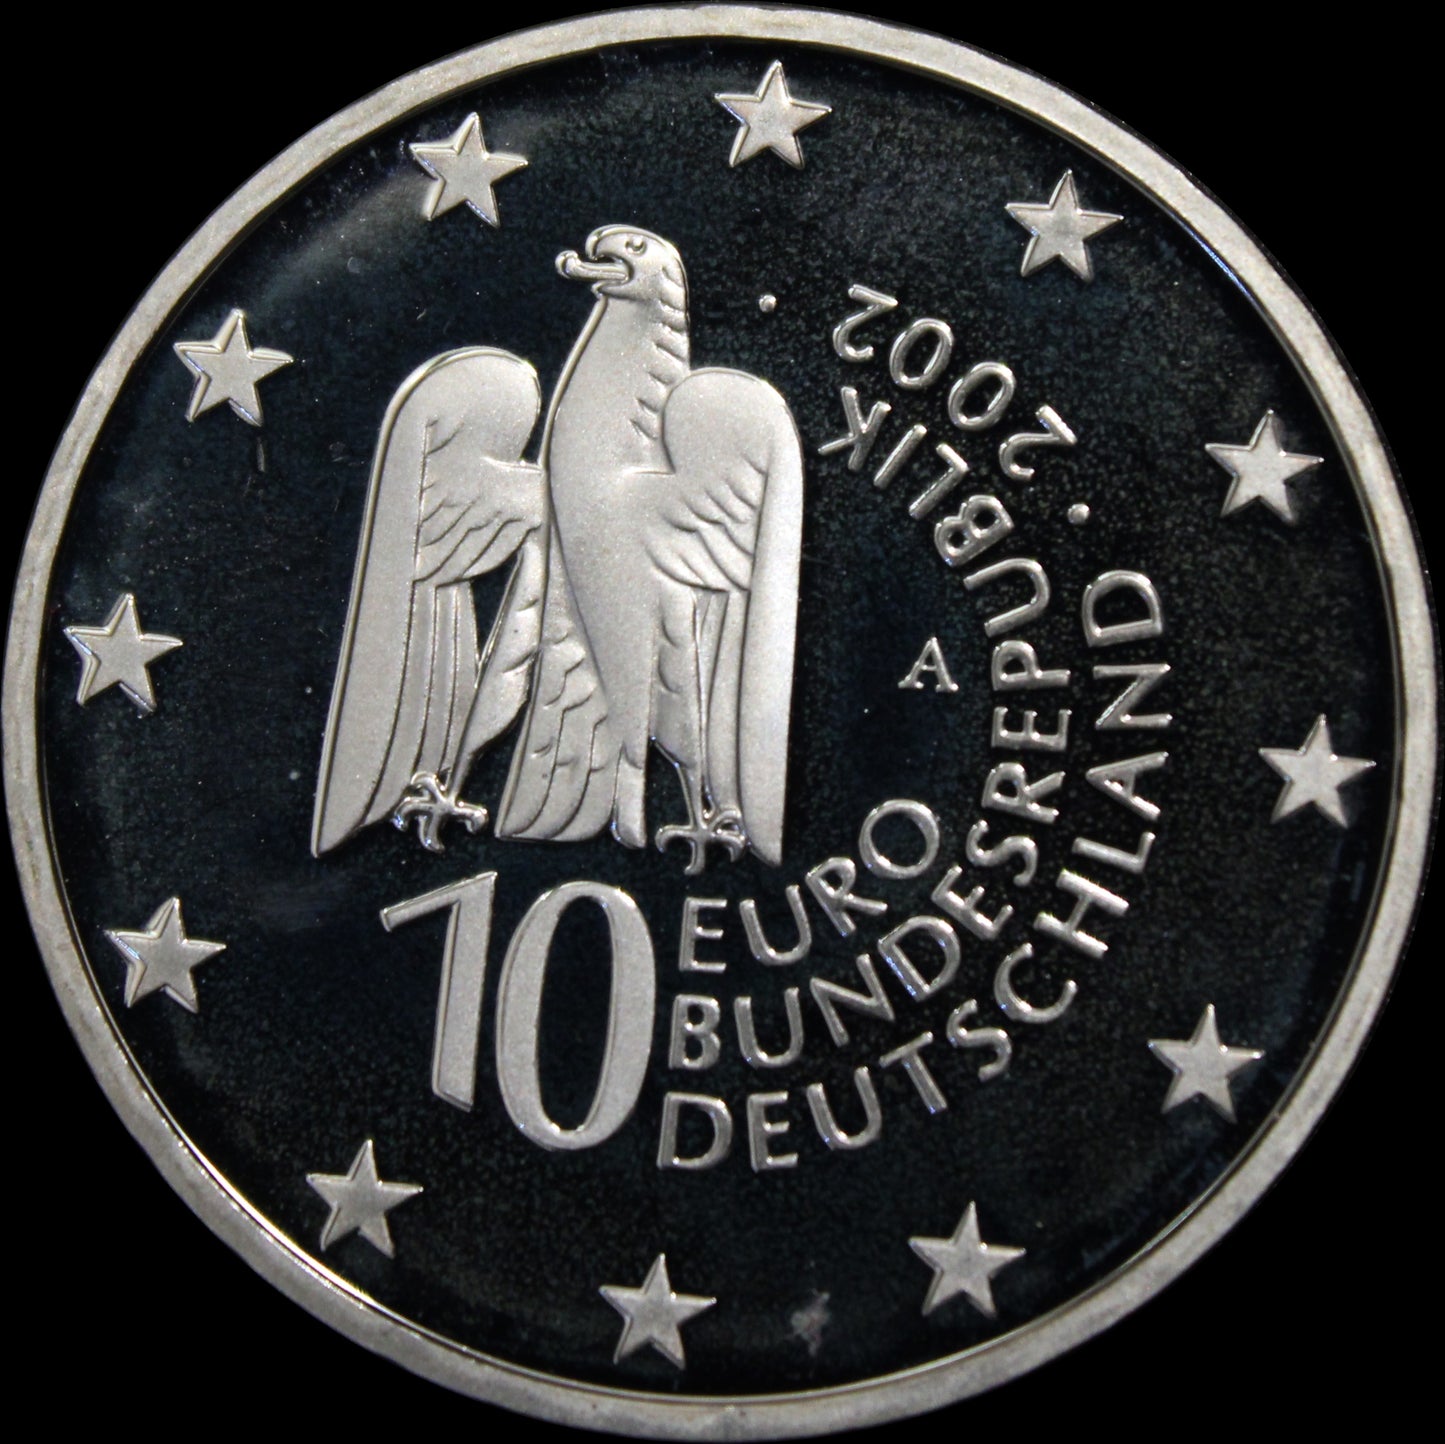 MUSEUMSINSEL BERLIN, Serie 10 € Silber Gedenkmünzen Deutschland, Spiegelglanz, 2002